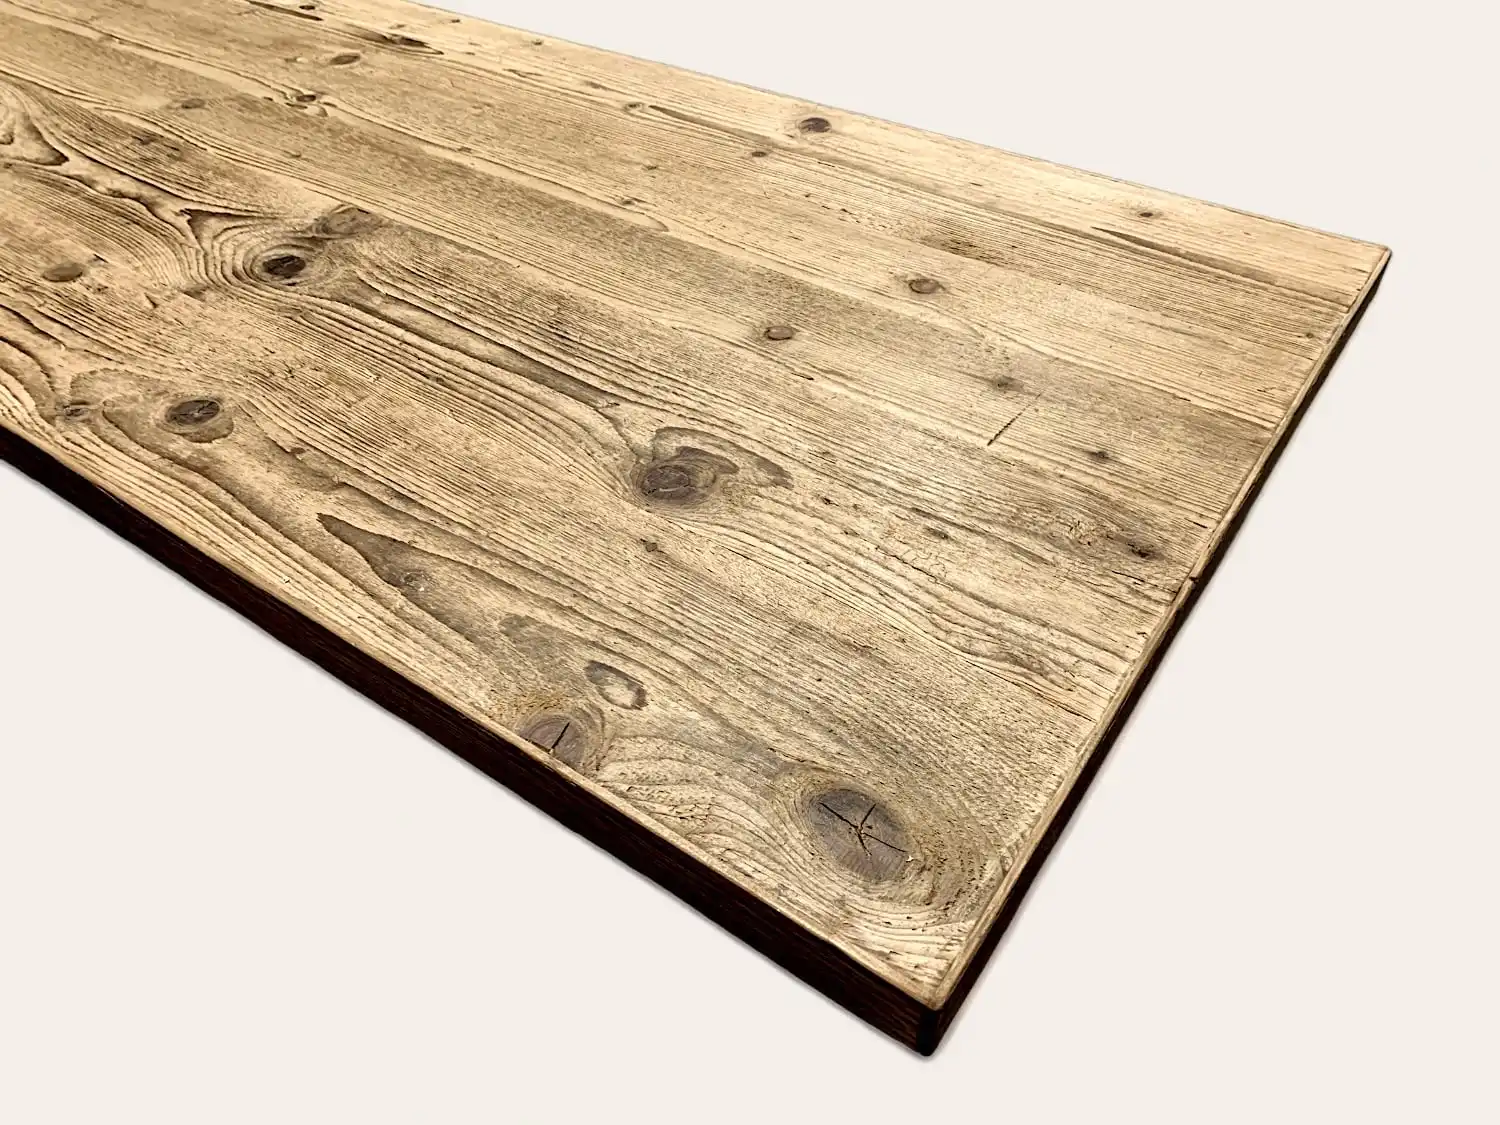 Un plateau de table en bois rustique sur une surface blanche.